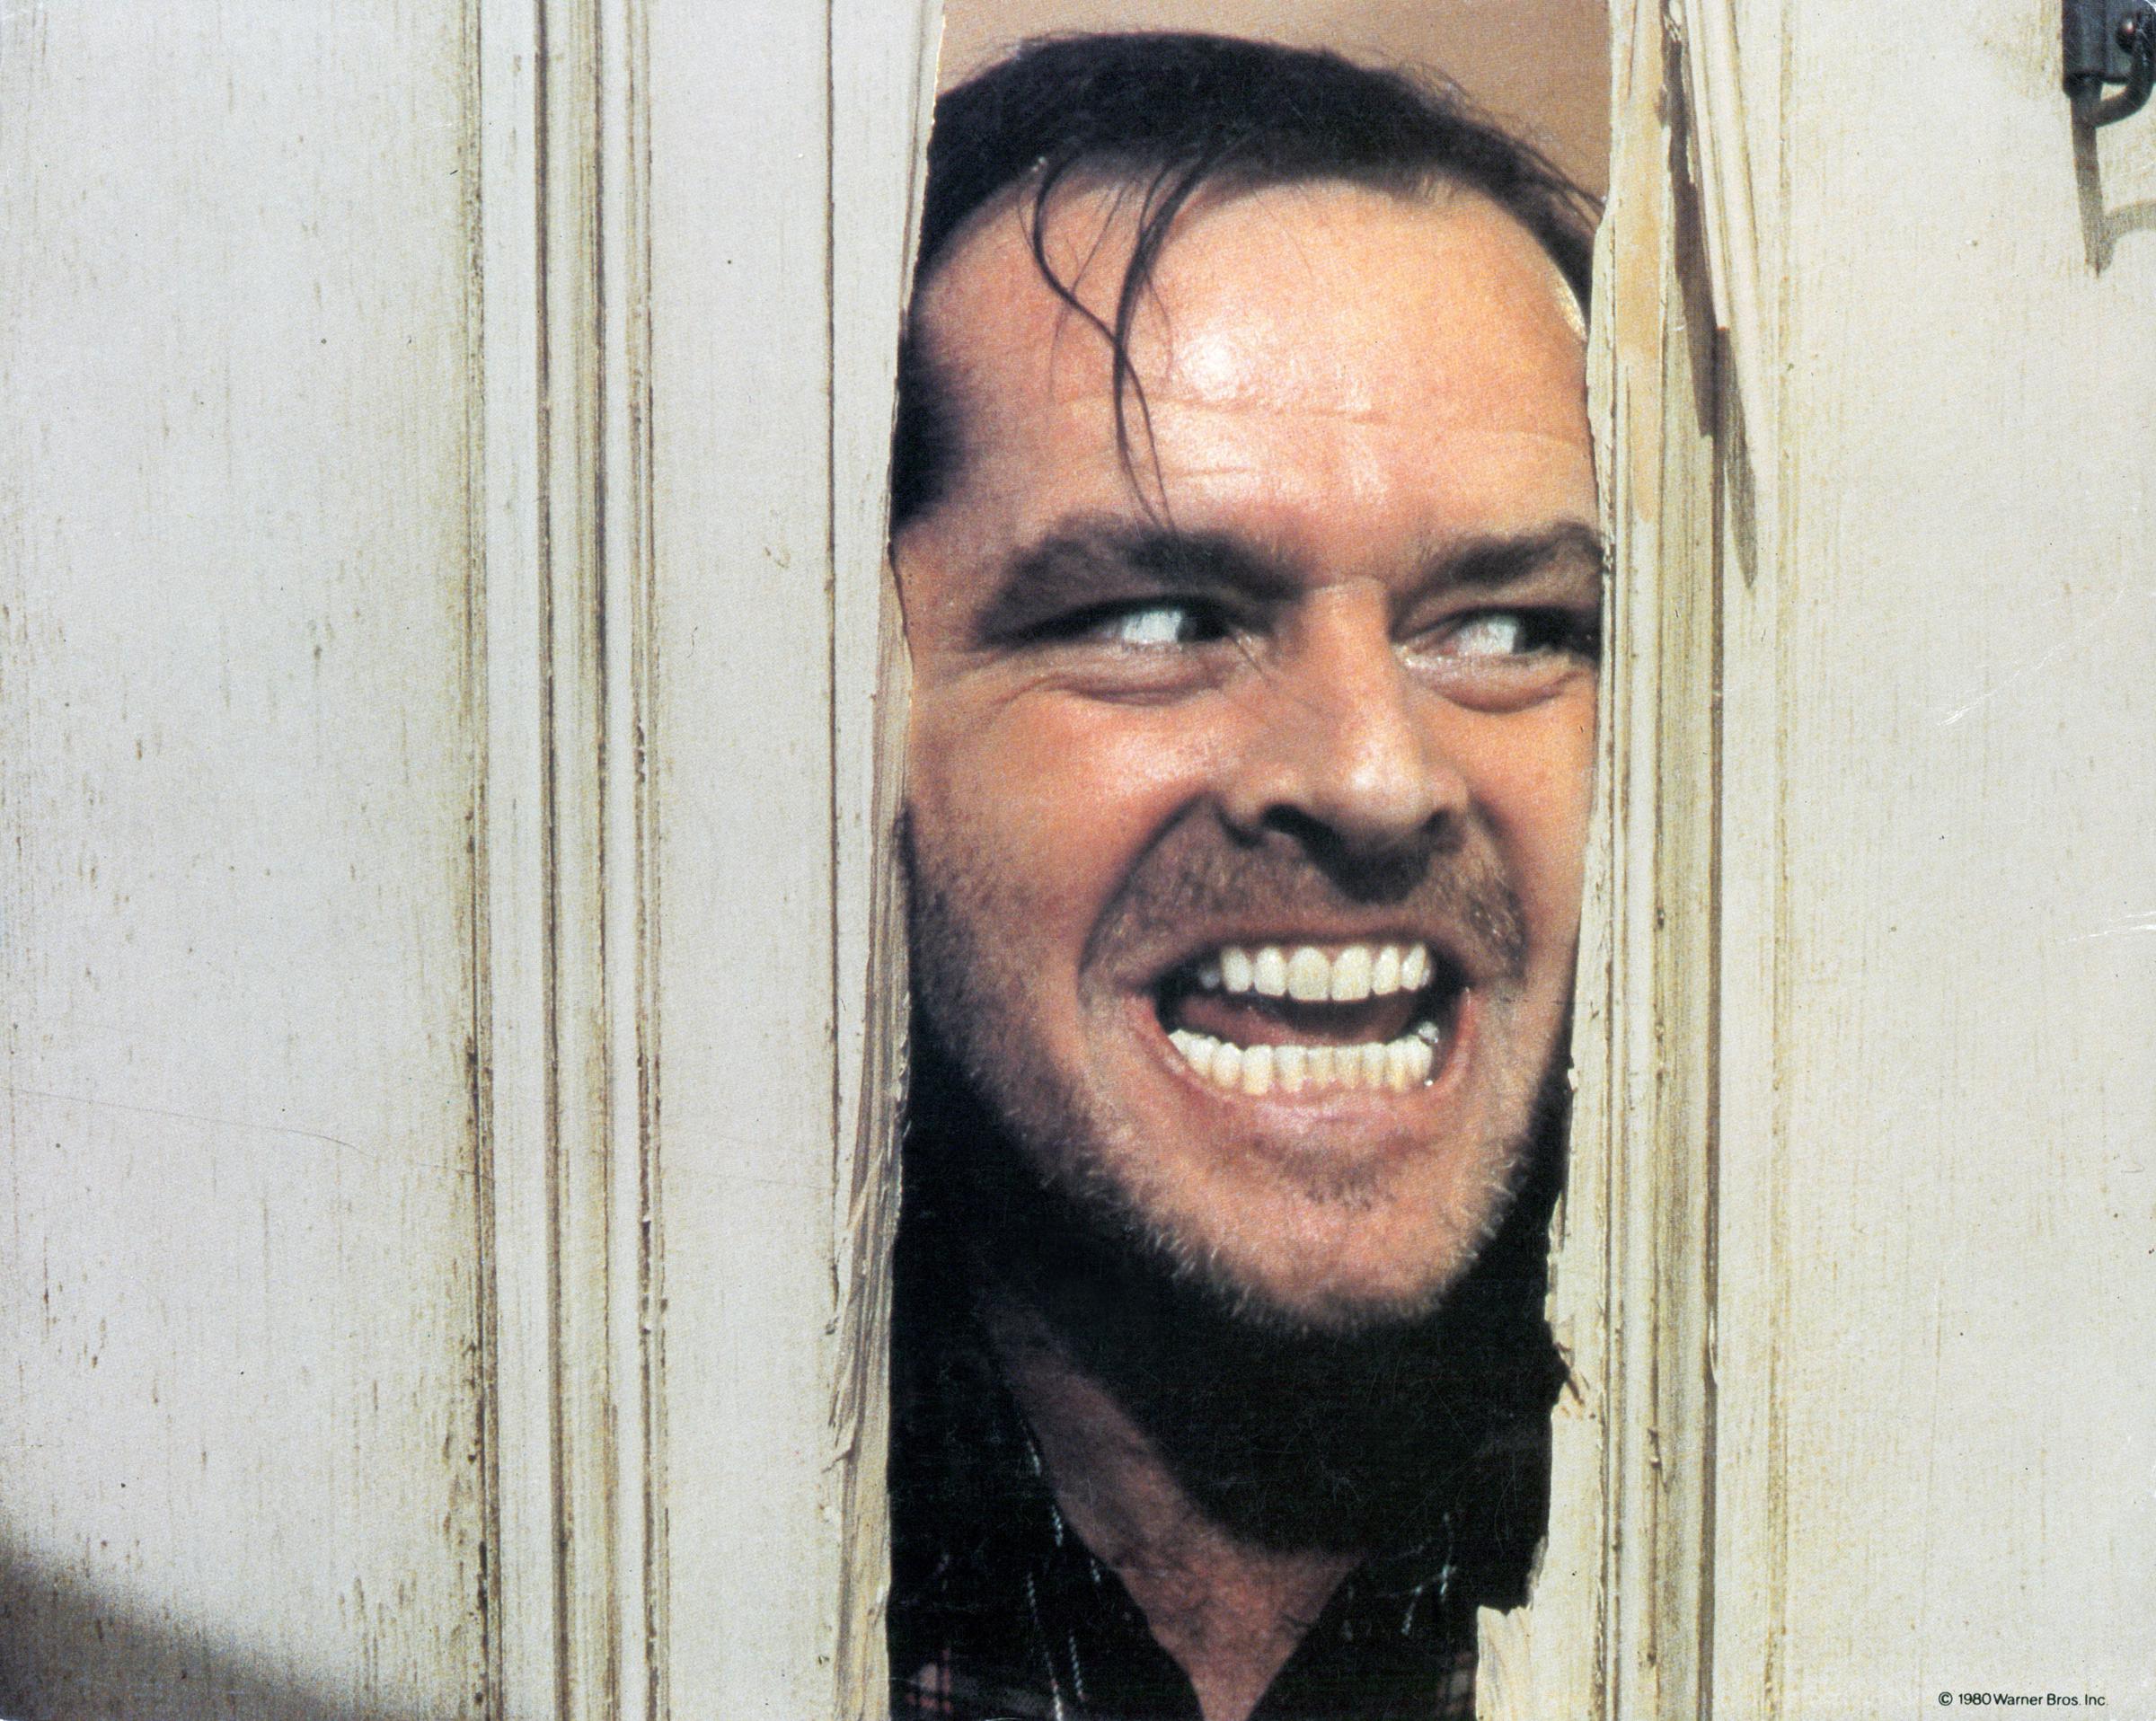 Jack Nicholson en el plató de "The Shining", 1980 | Fuente: Getty Images